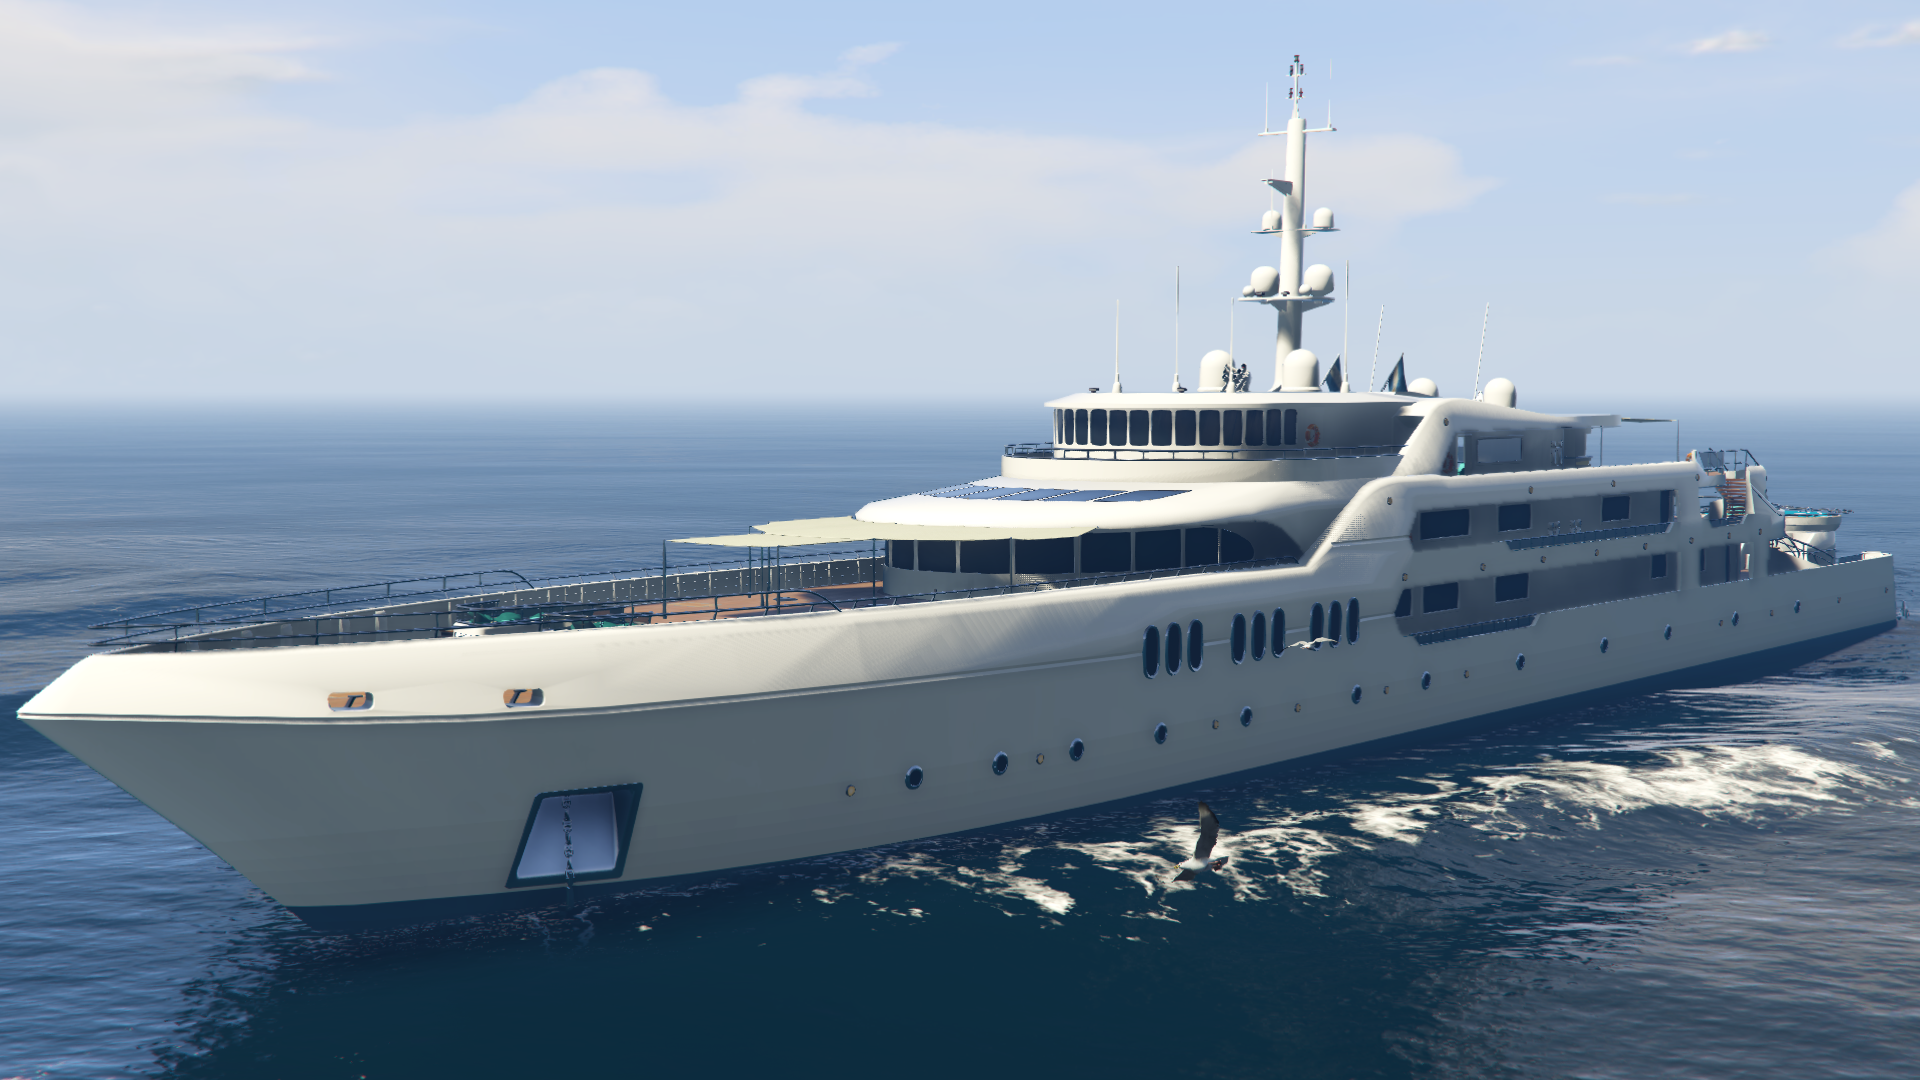 the orion yacht gta 5